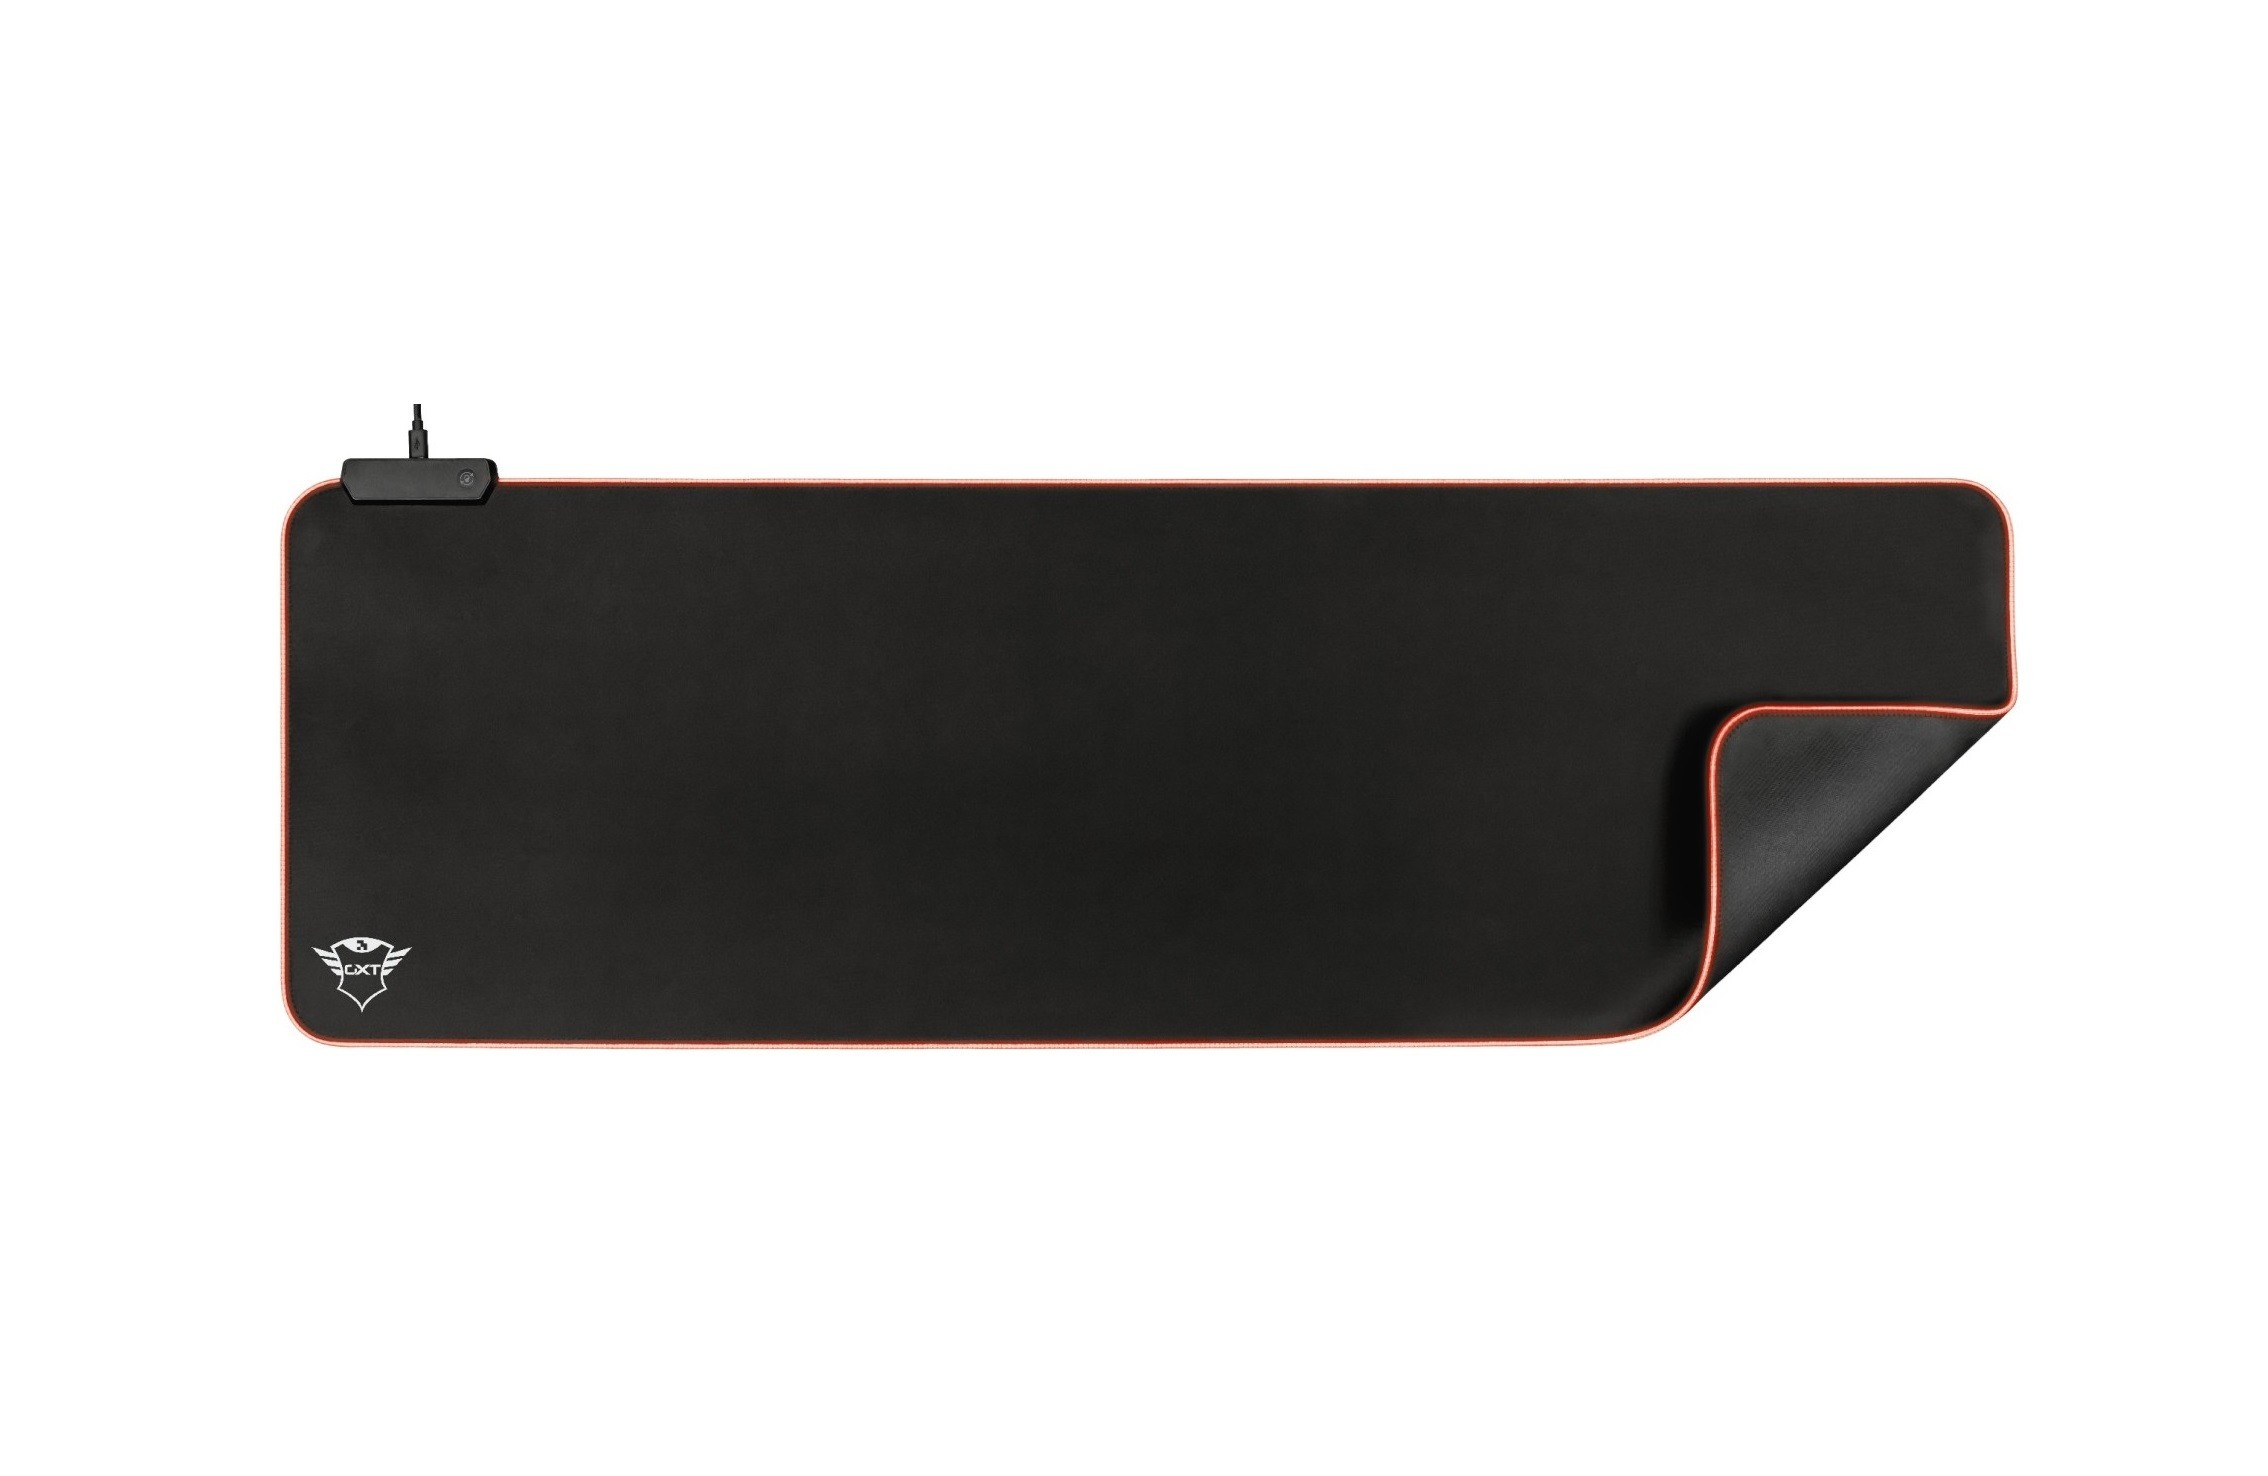 TRUST GXT 764 Glide-Flex RGB Mouse Pad XXL | 930x300x3mm